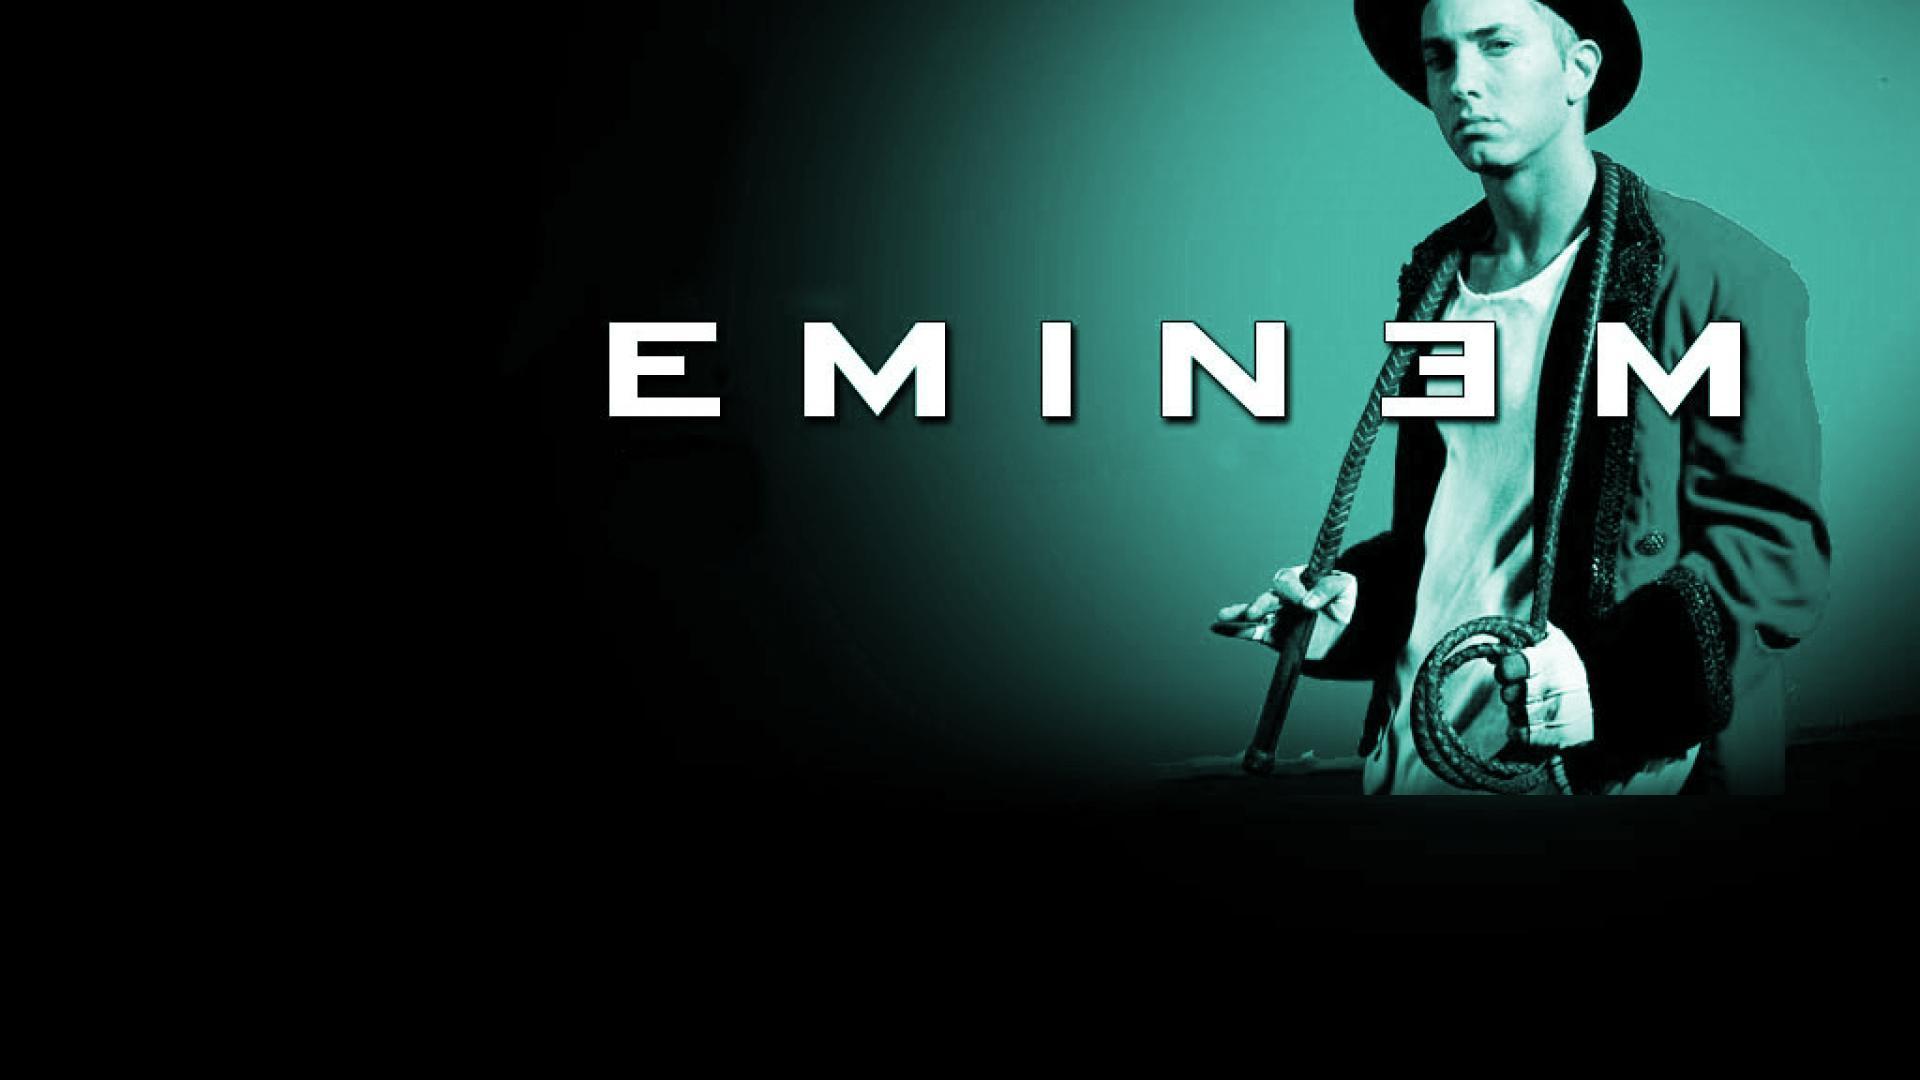 Eminem Hd Wallpapers 1080p-adxqw81 - Eminem Wallpaper Hd Pc - 1920x1080  Wallpaper 